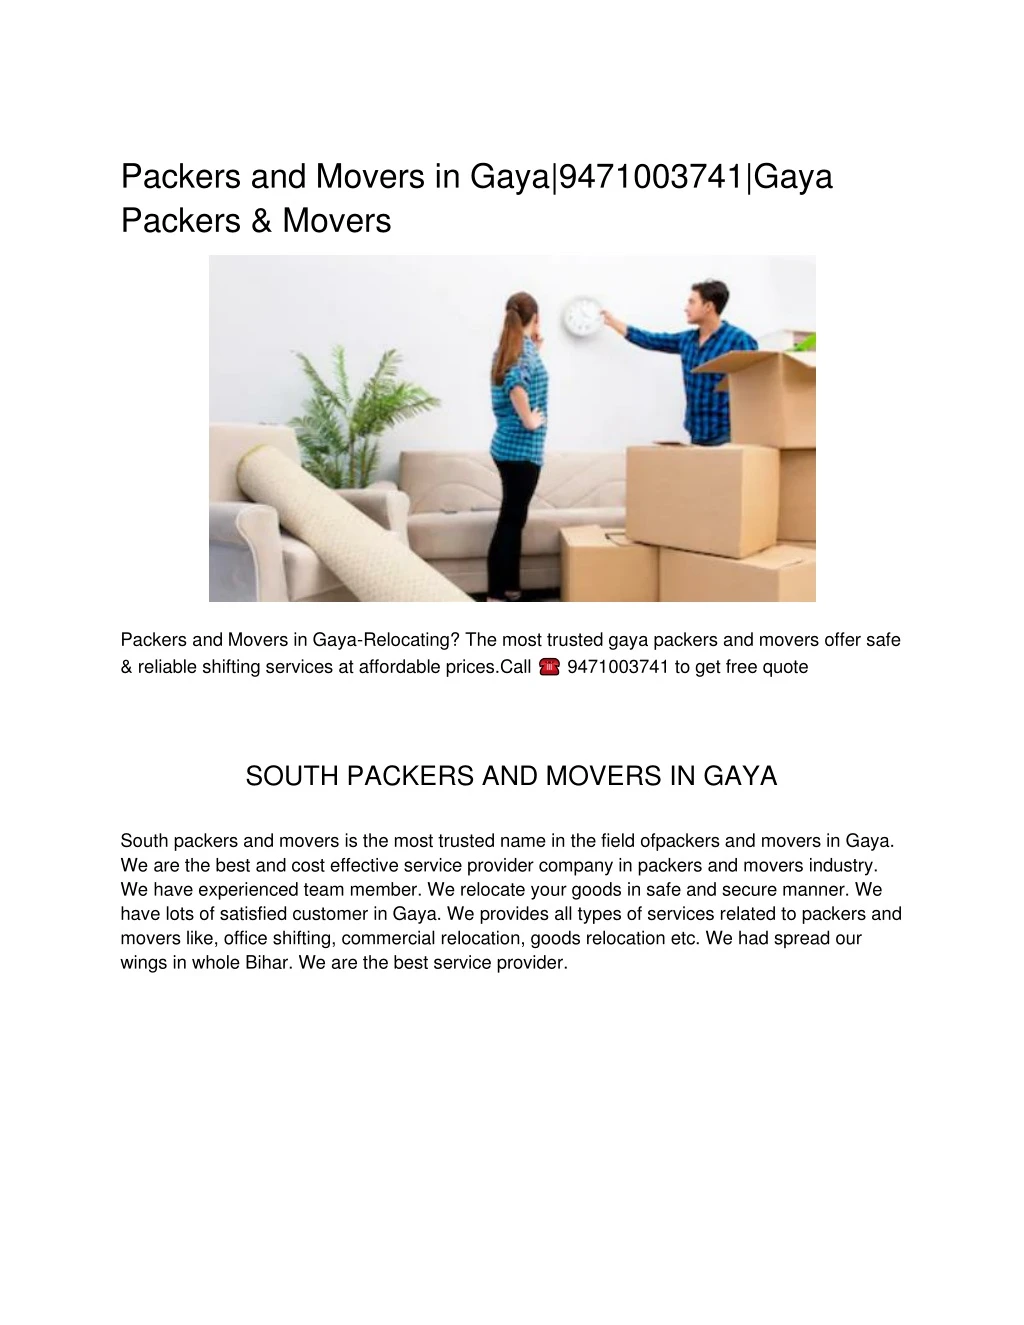 packers and movers in gaya 9471003741 gaya